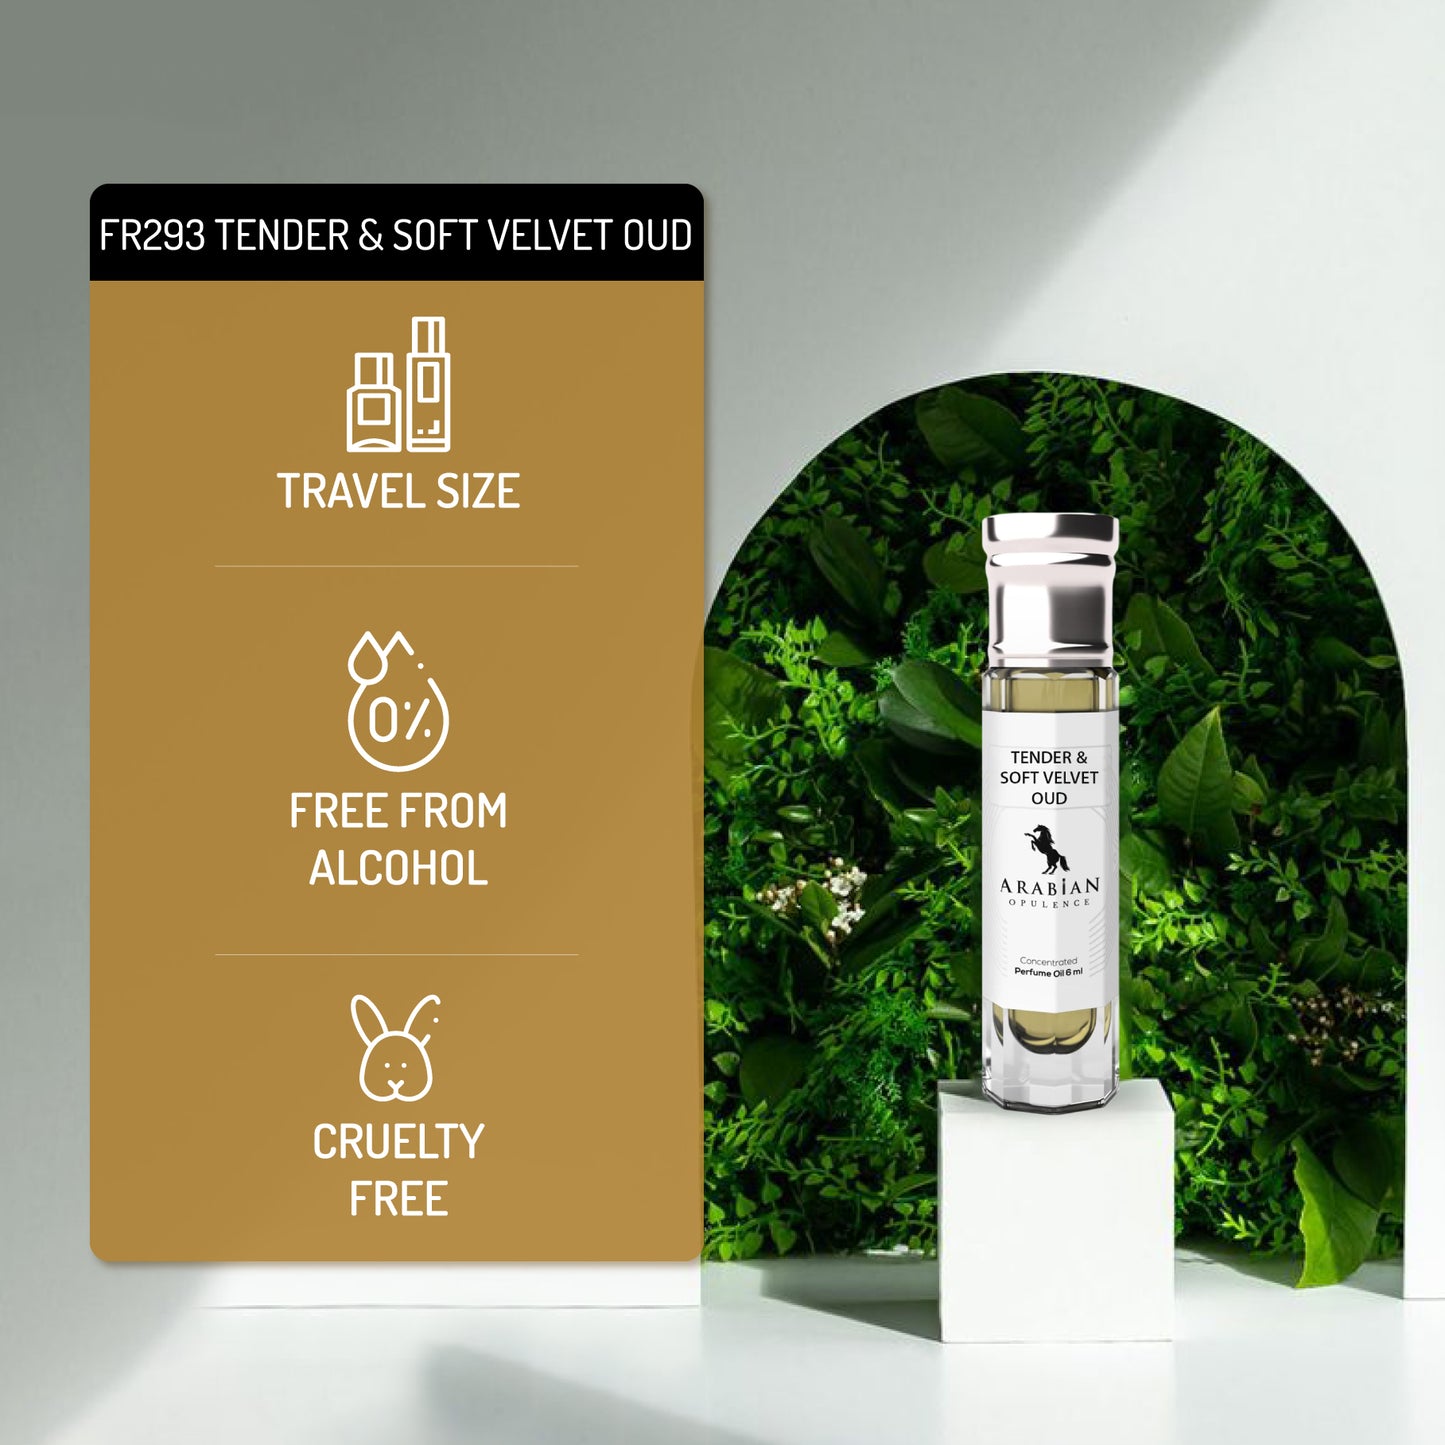 FR293 TENDER & SOFT VELVET OUD U - Perfume Body Oil - Alcohol Free